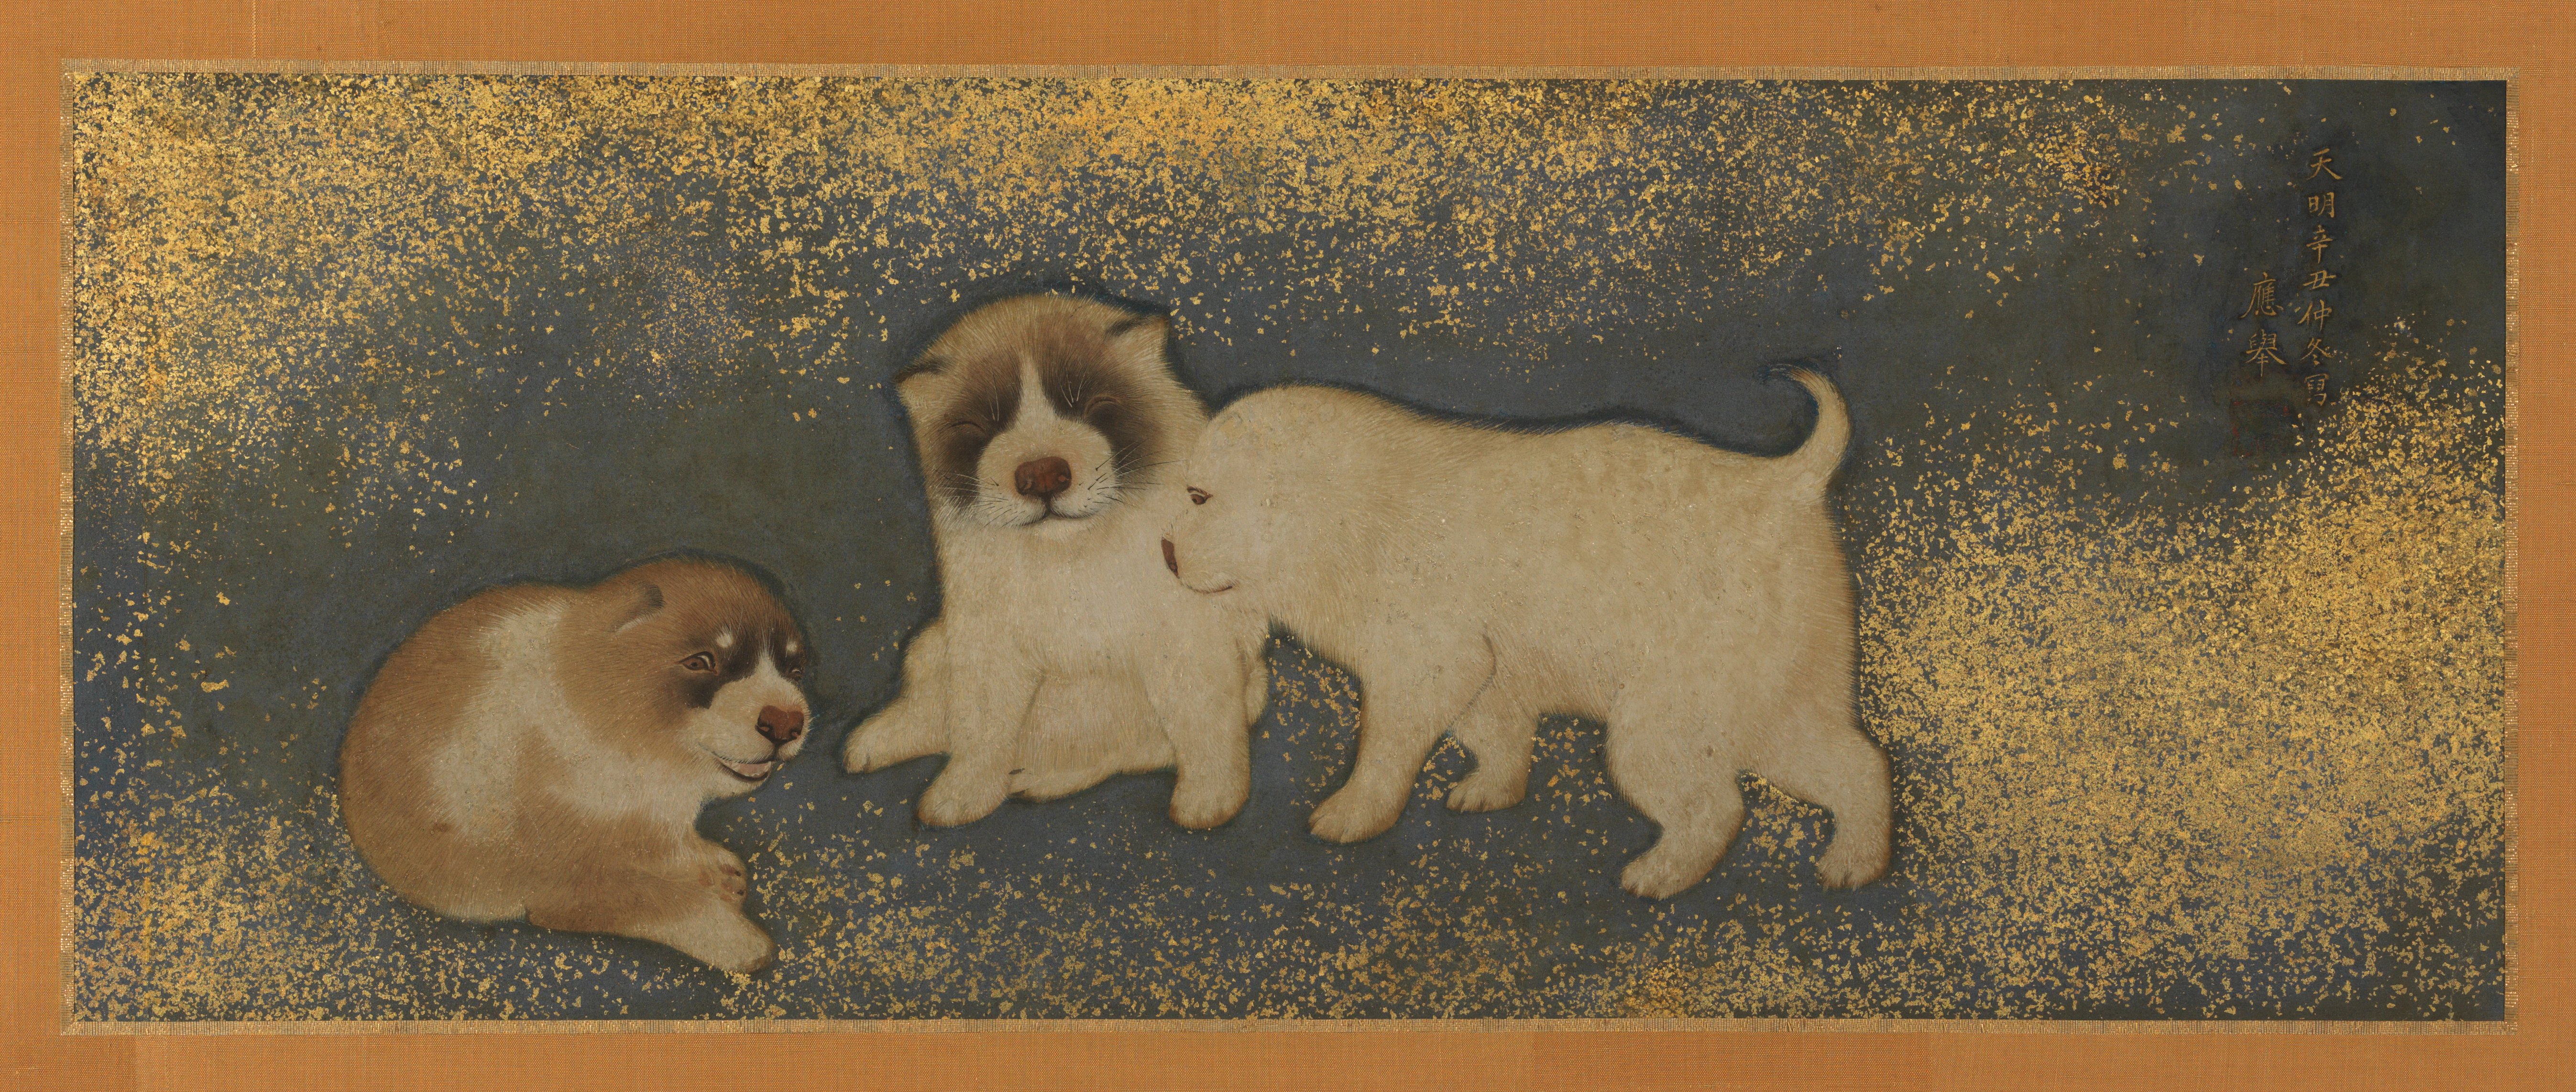 小狗 by Maruyama Ōkyo - 1781 年 - 24.45 × 63.18 厘米 